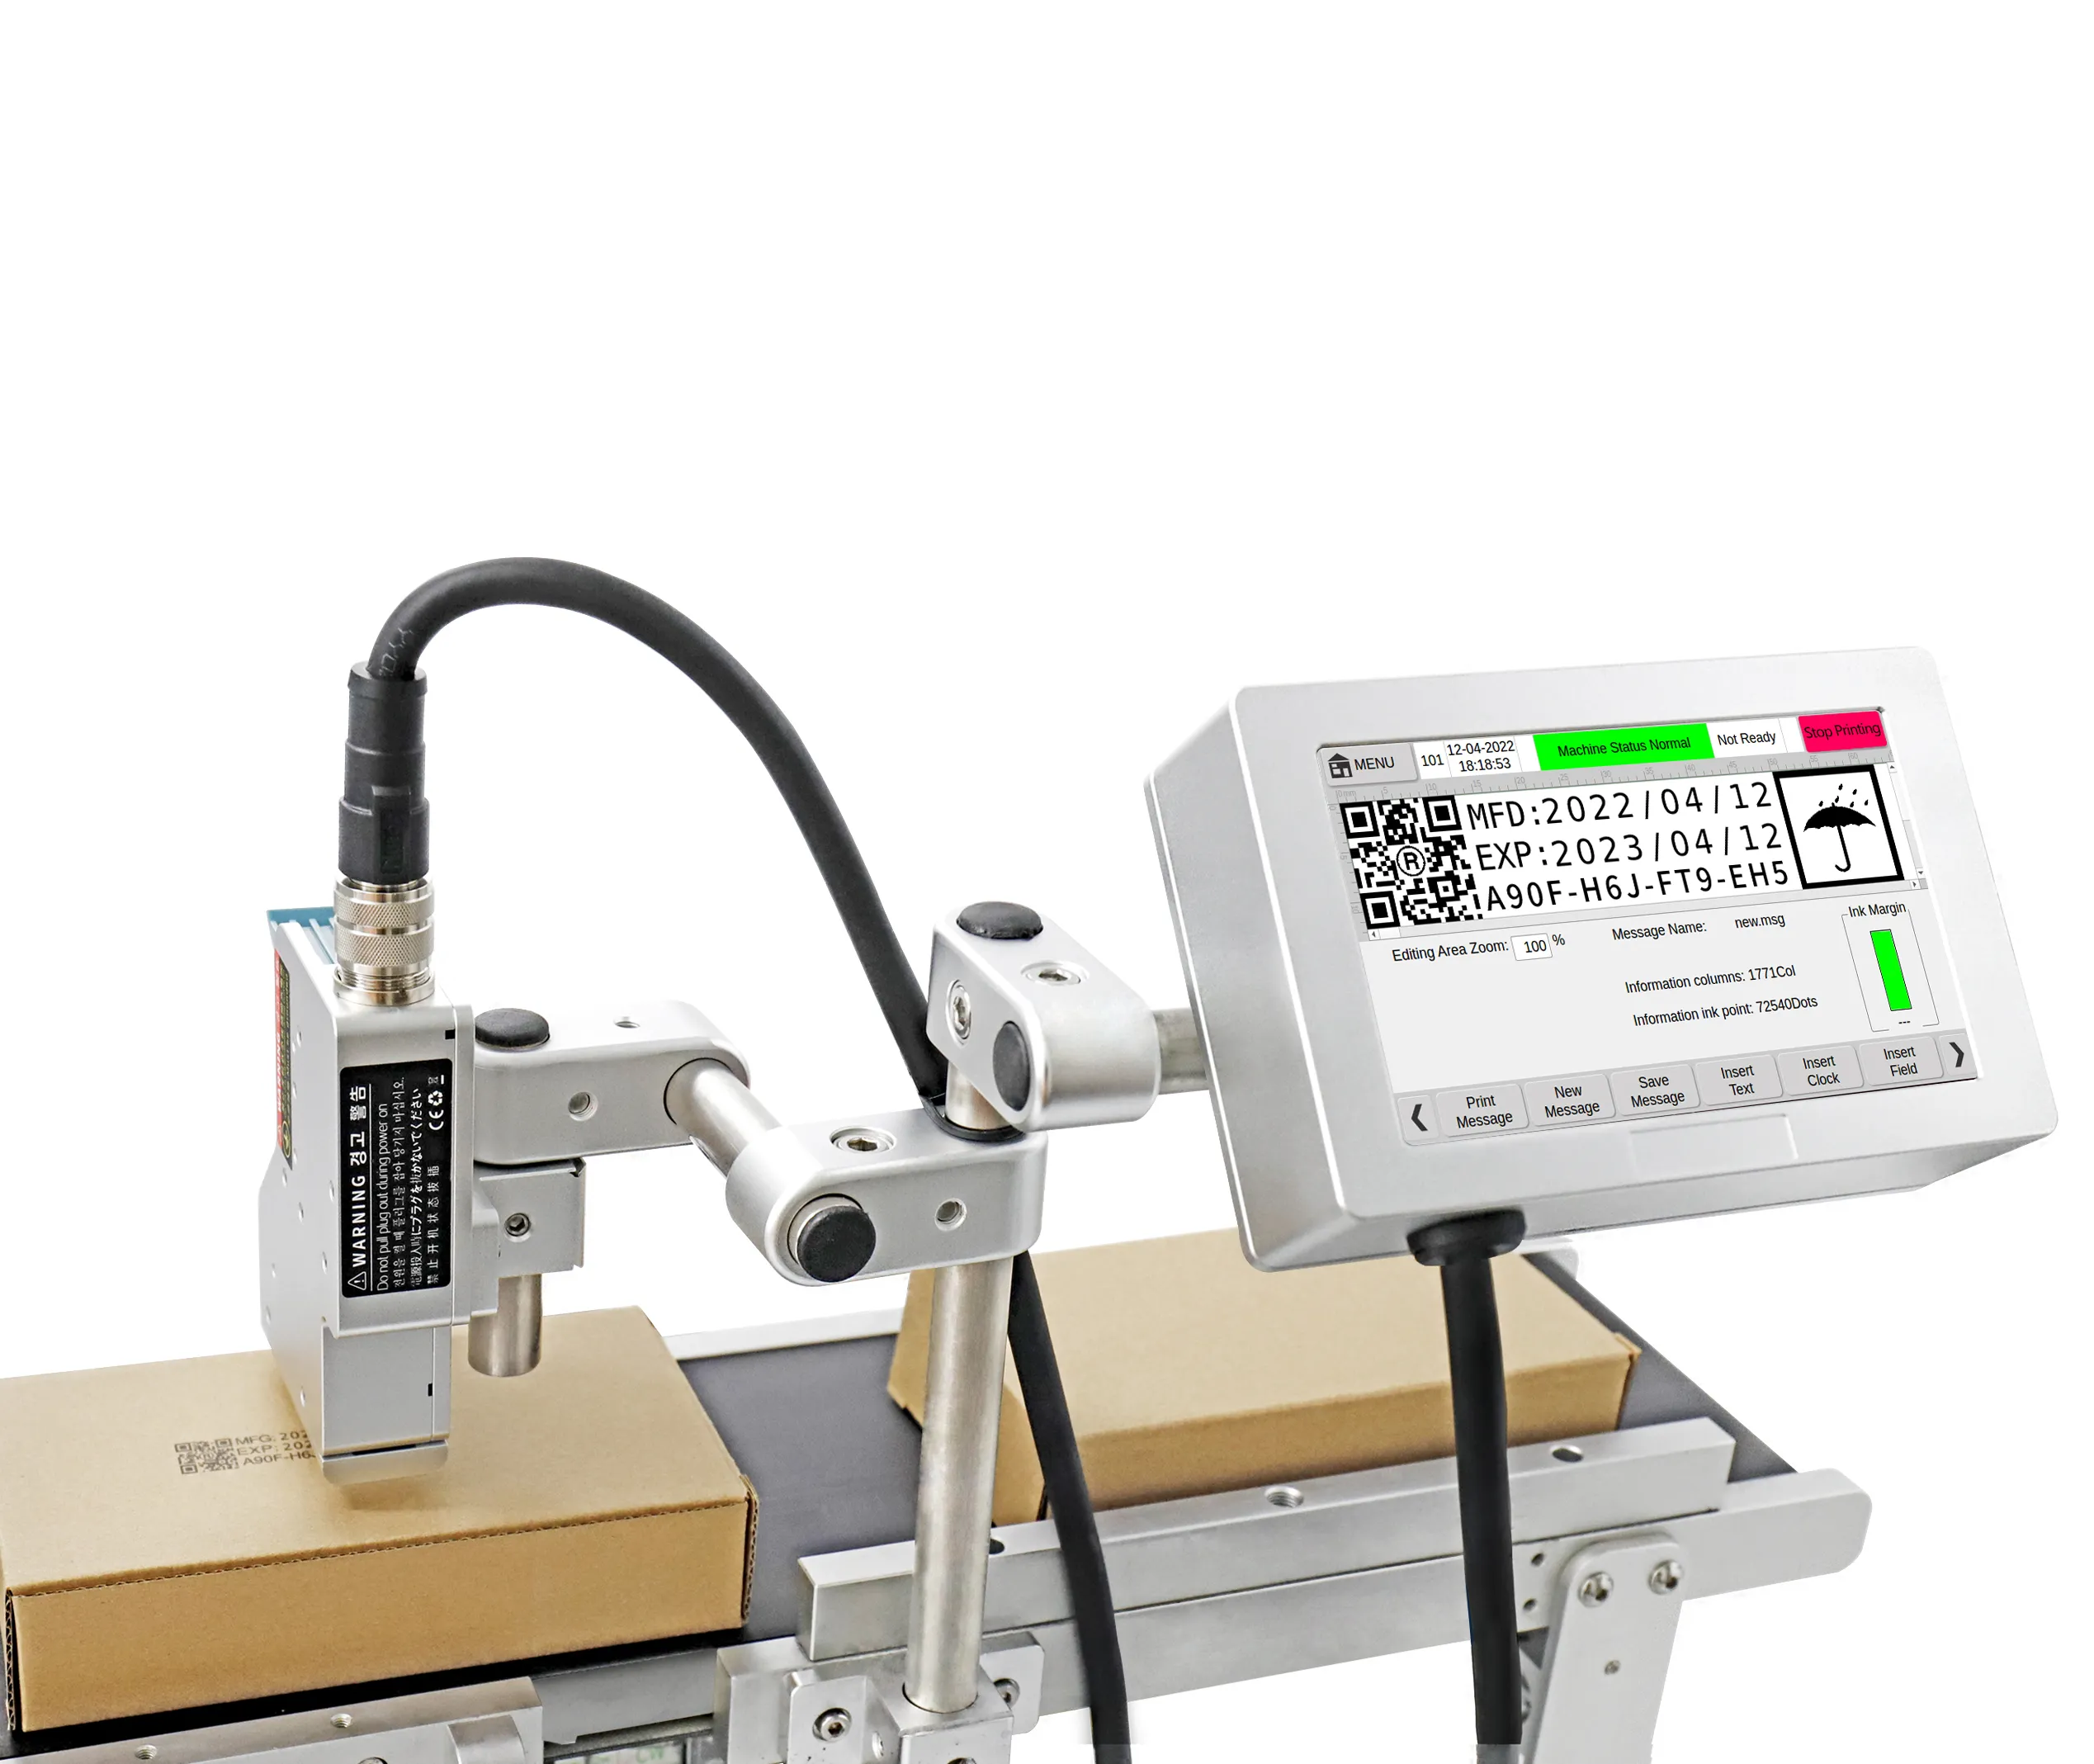 DOCOD OEM/ODM T180P 12,7 мм TIJ an струйный принтер цена промышленной этикетки аппликатор для даты истечения срока годности QR-код номер партии L1118